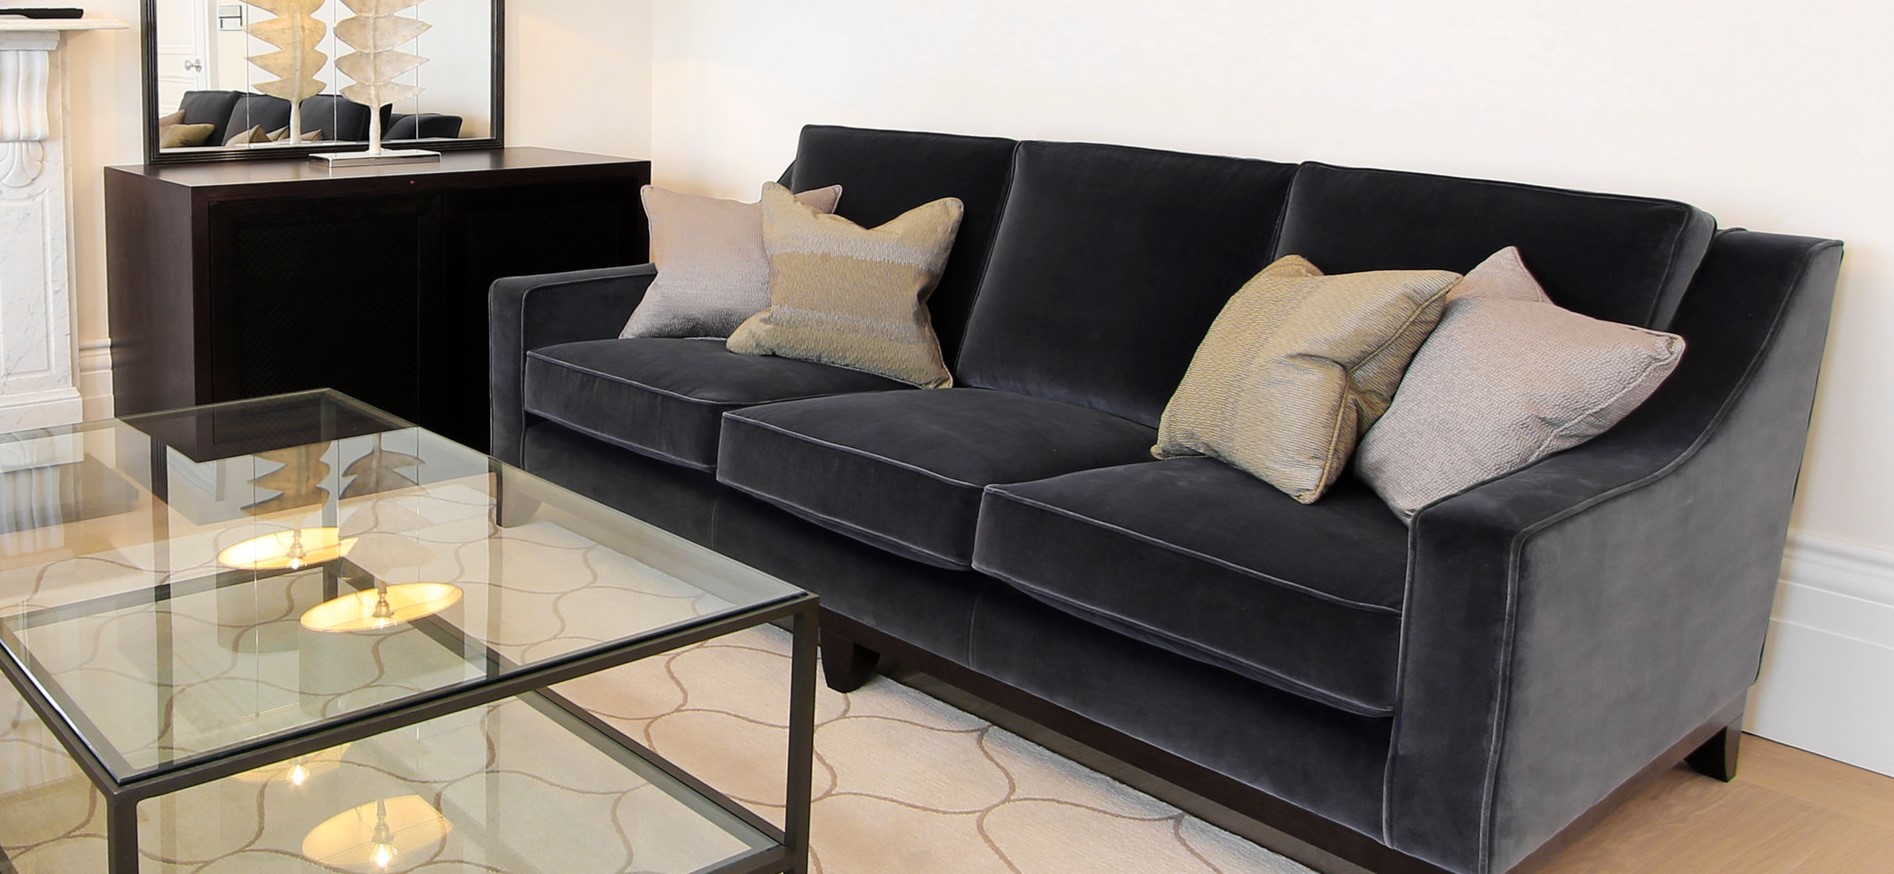 В светлой комнате можно использовать темный диван в качестве эффектного акцента